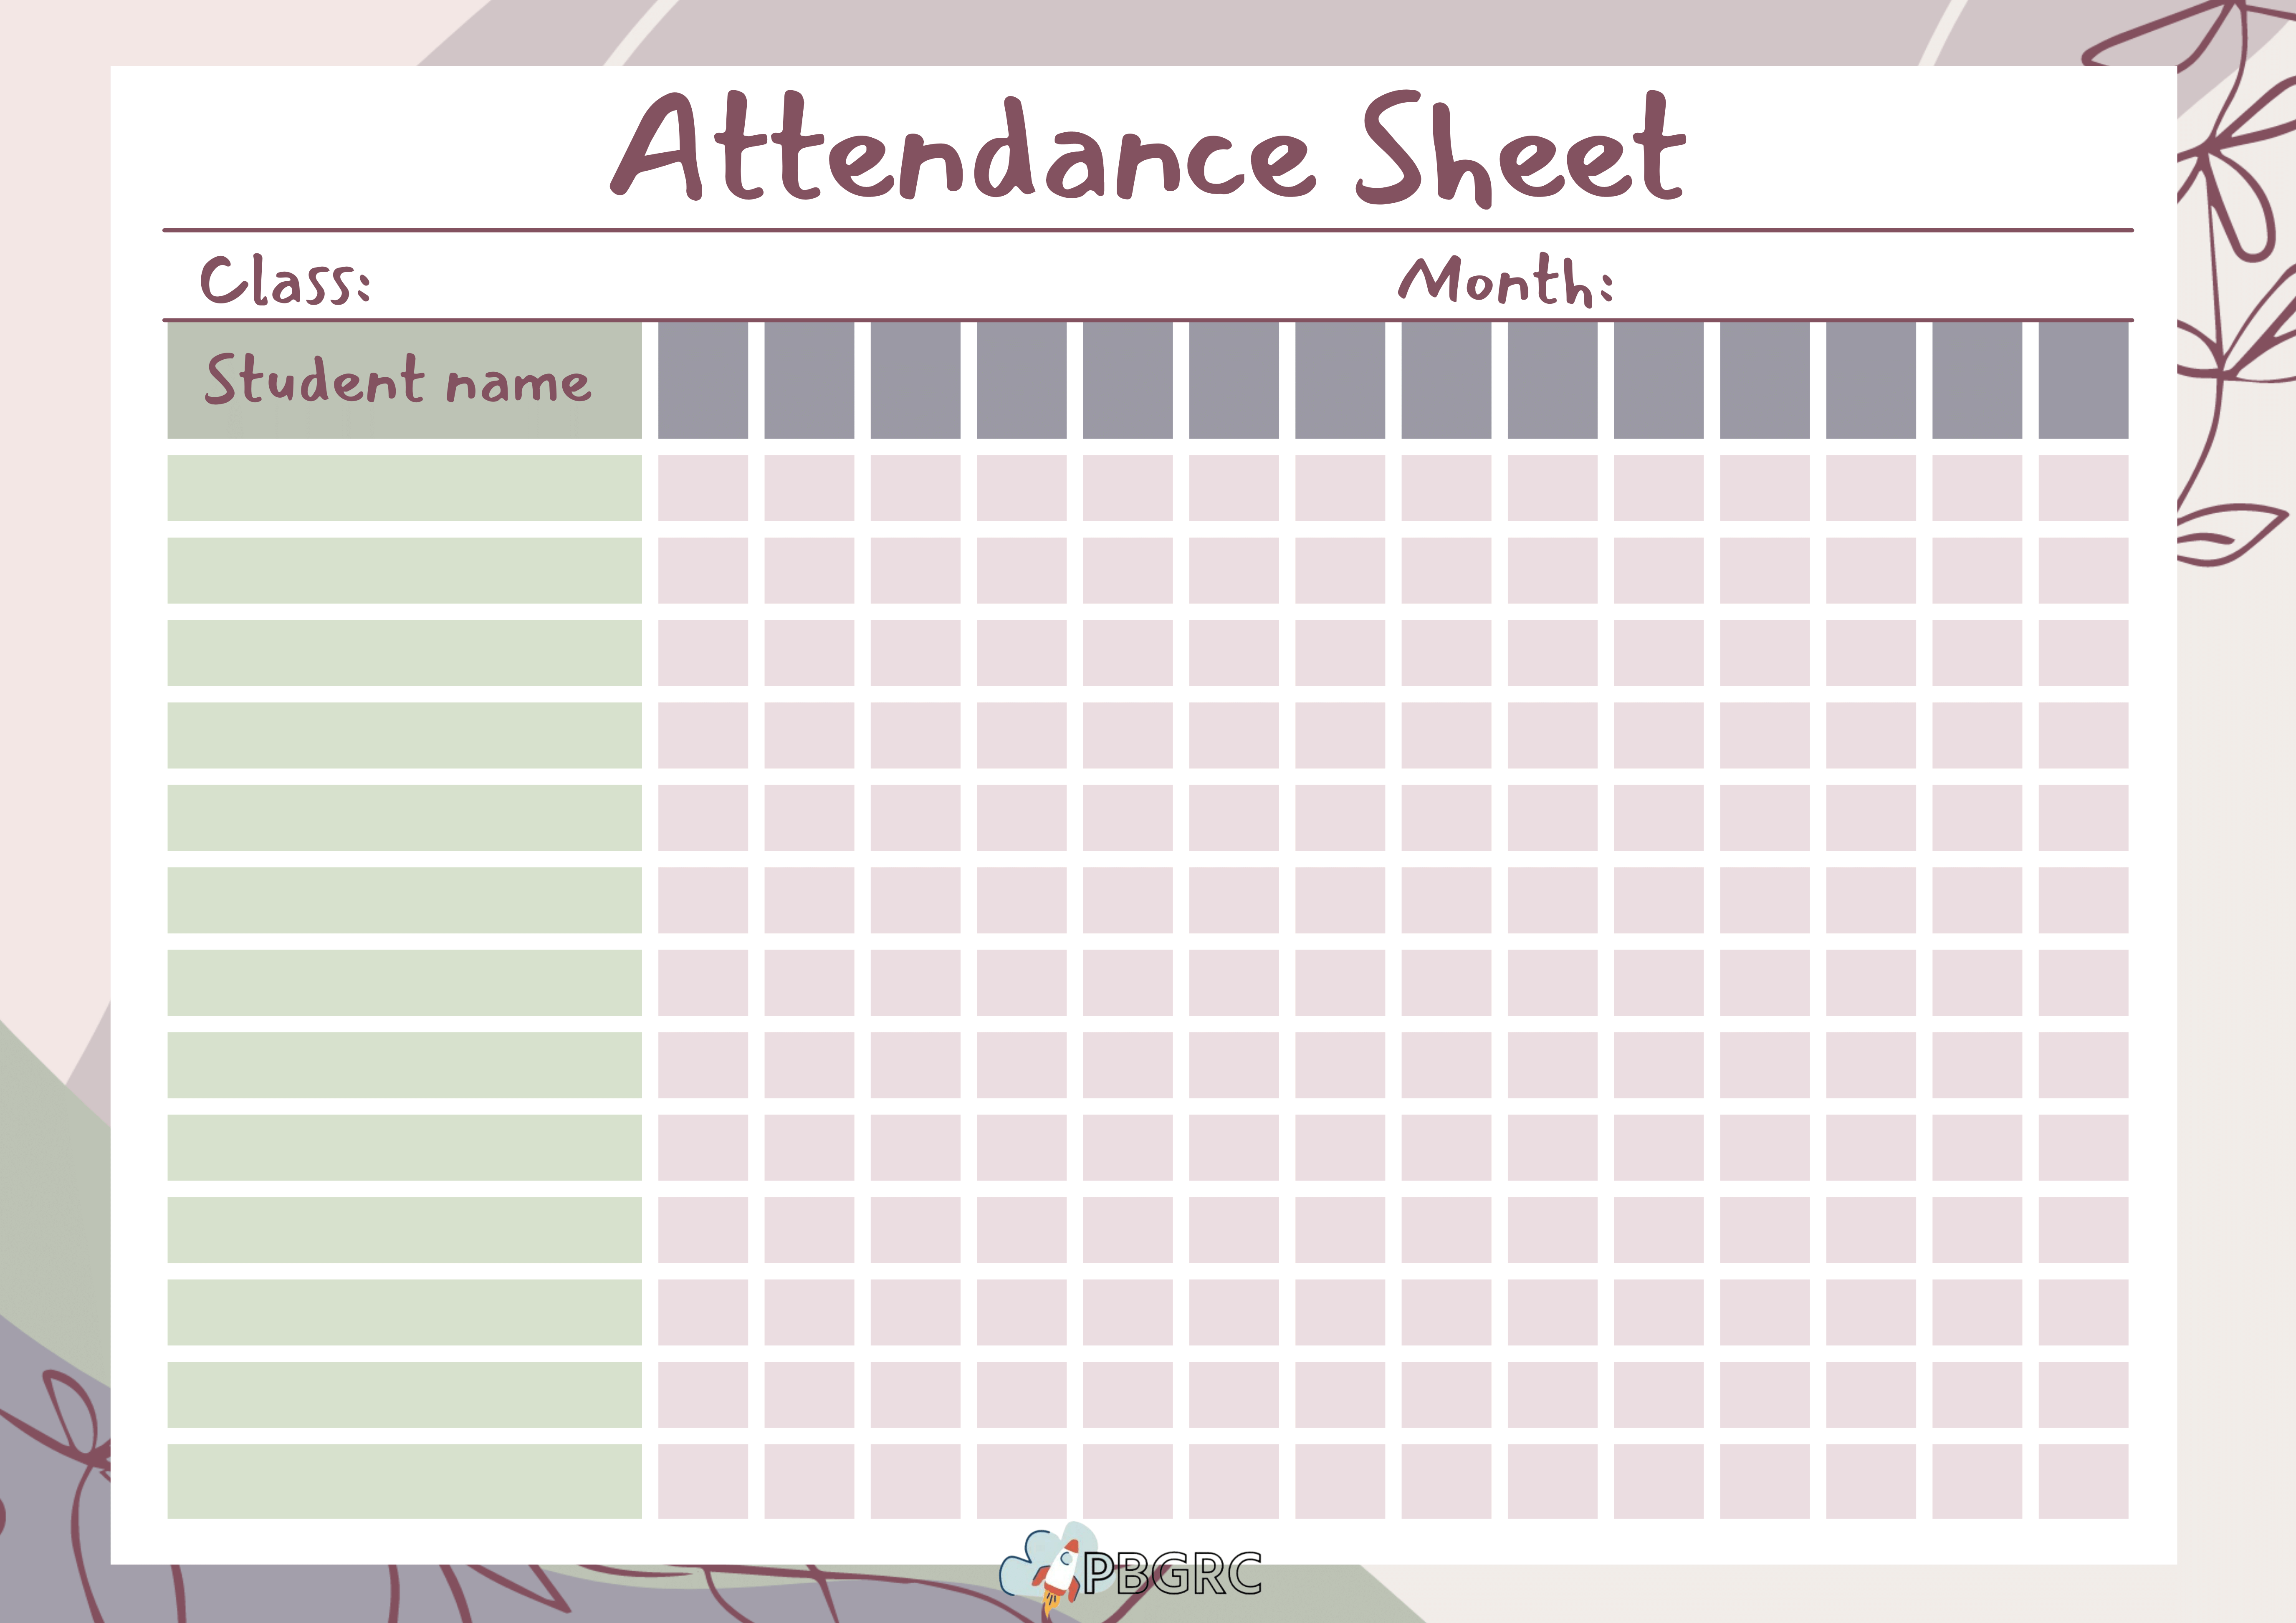 aa attendance sheet